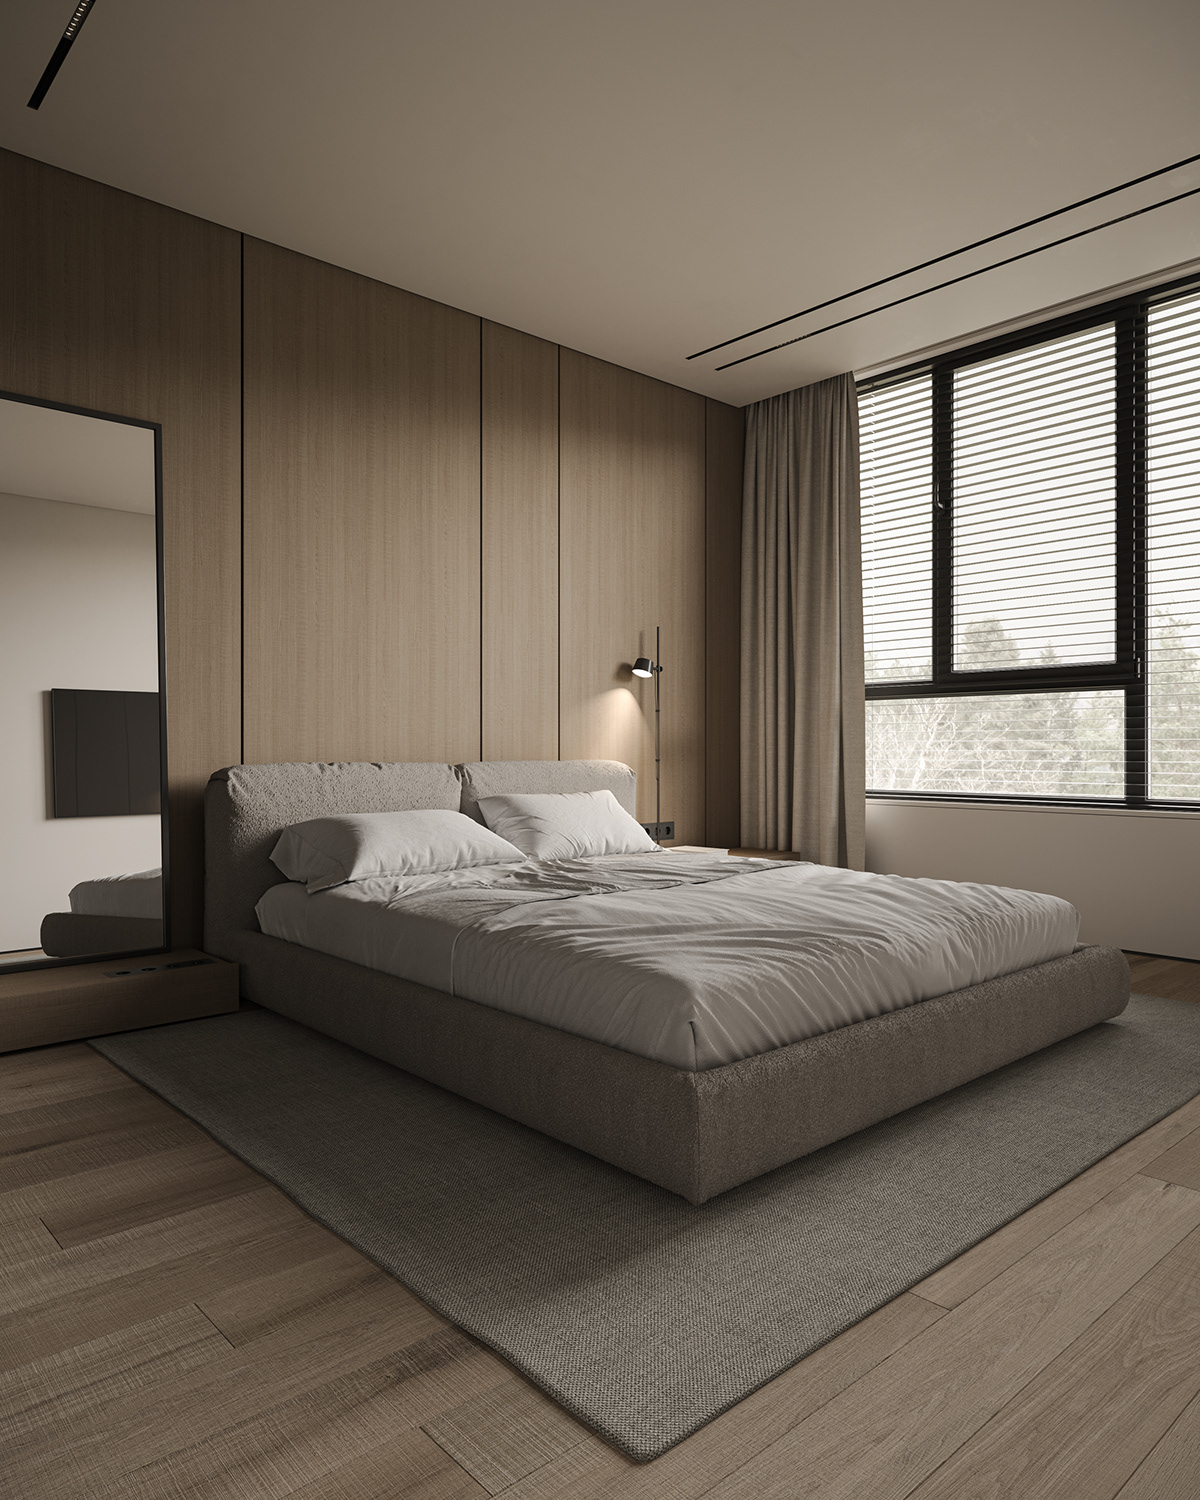 interior design  Interior design architecture 3ds max visualization CGI cozy interior Minimalism minimaldesign